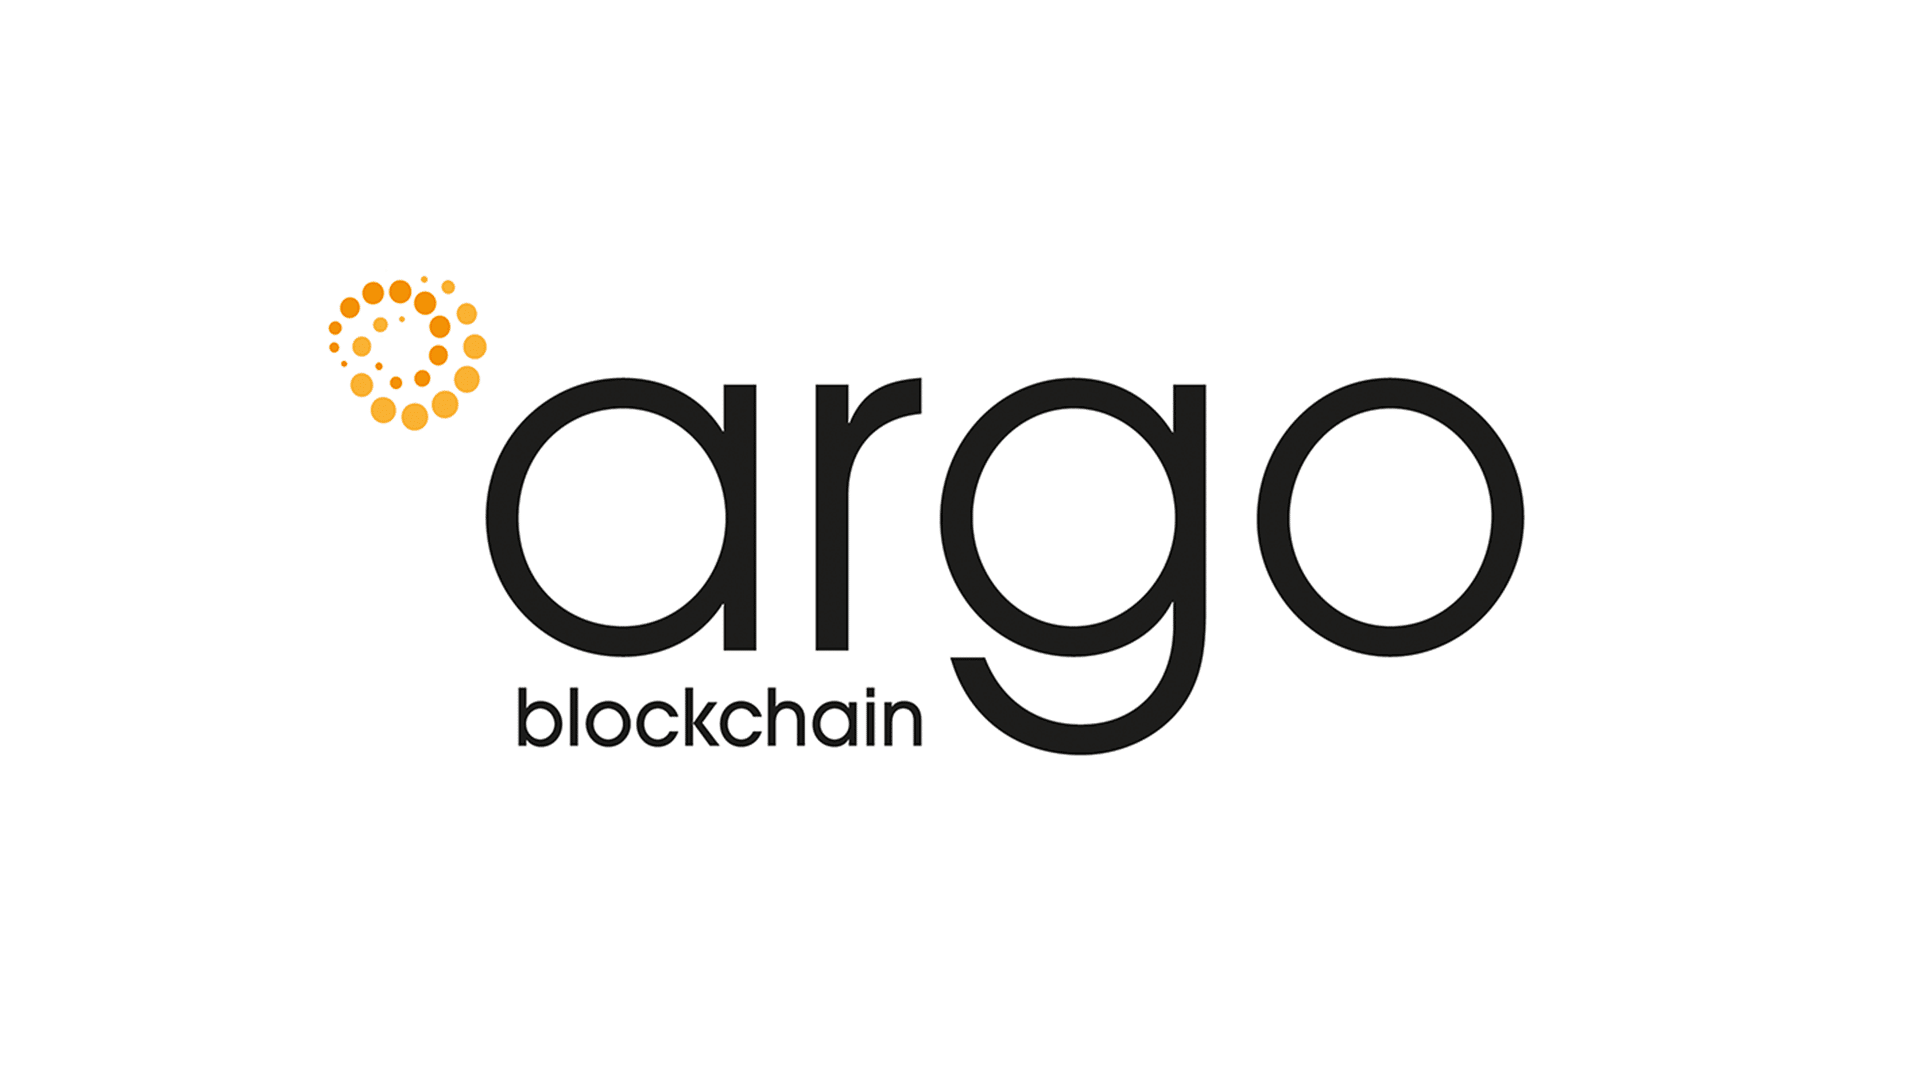 Argo Blockchain heeft in mei 25% minder Bitcoins gedolven